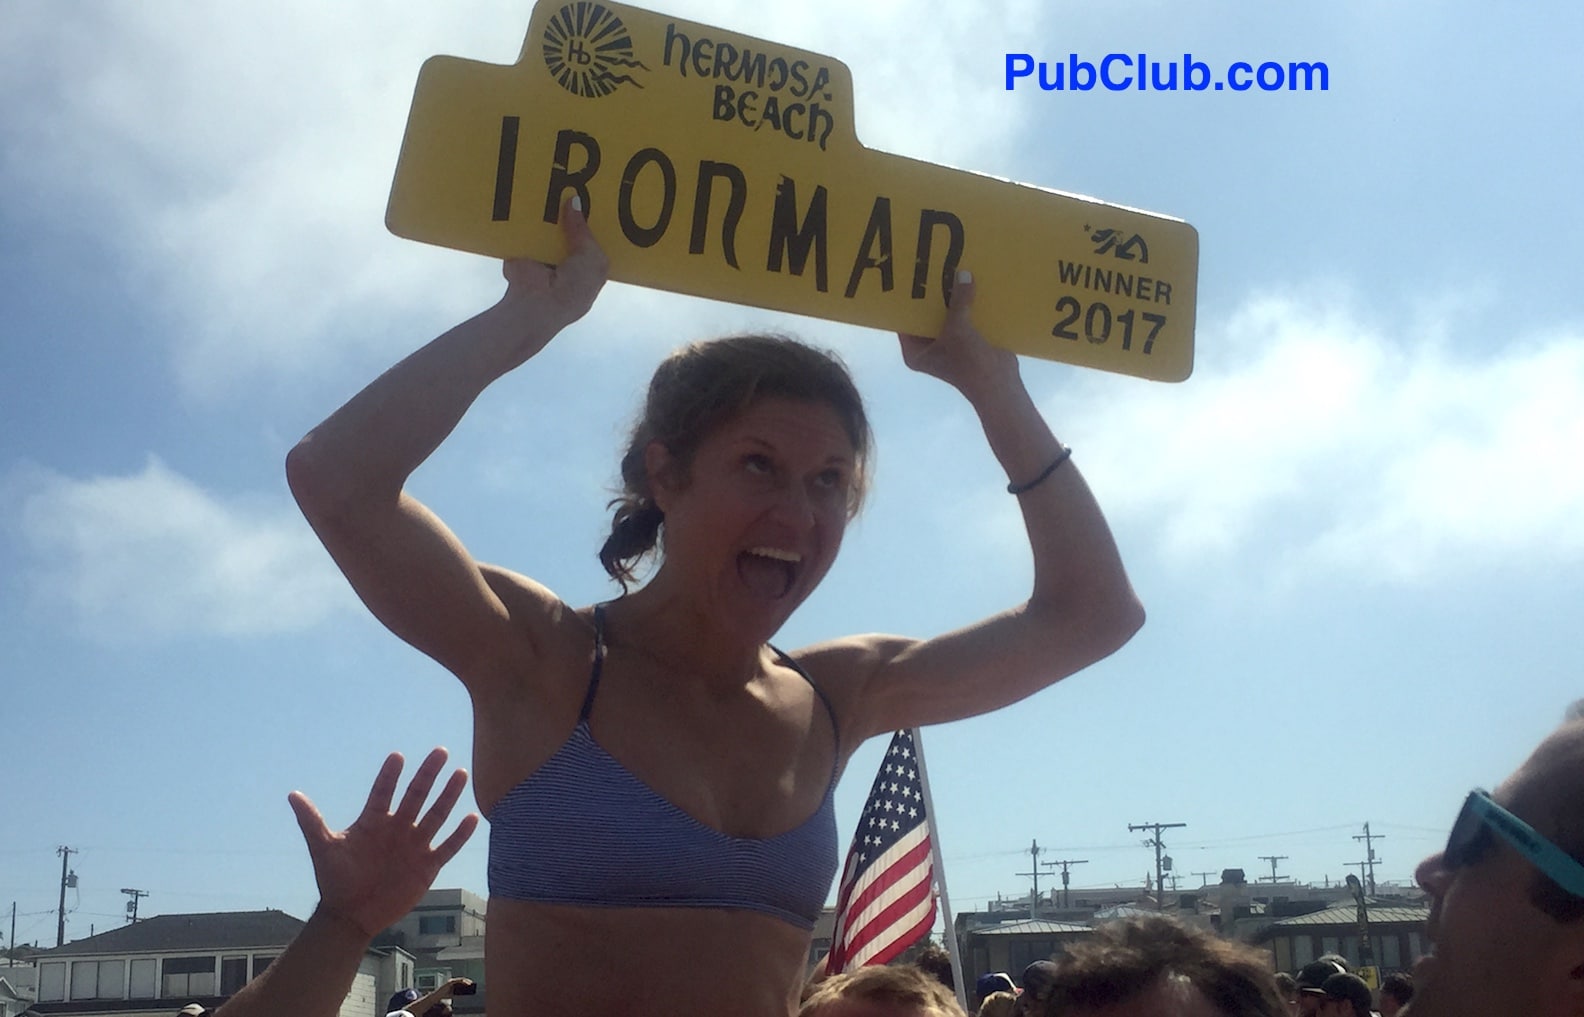 Hermosa Beach Ironman female winner